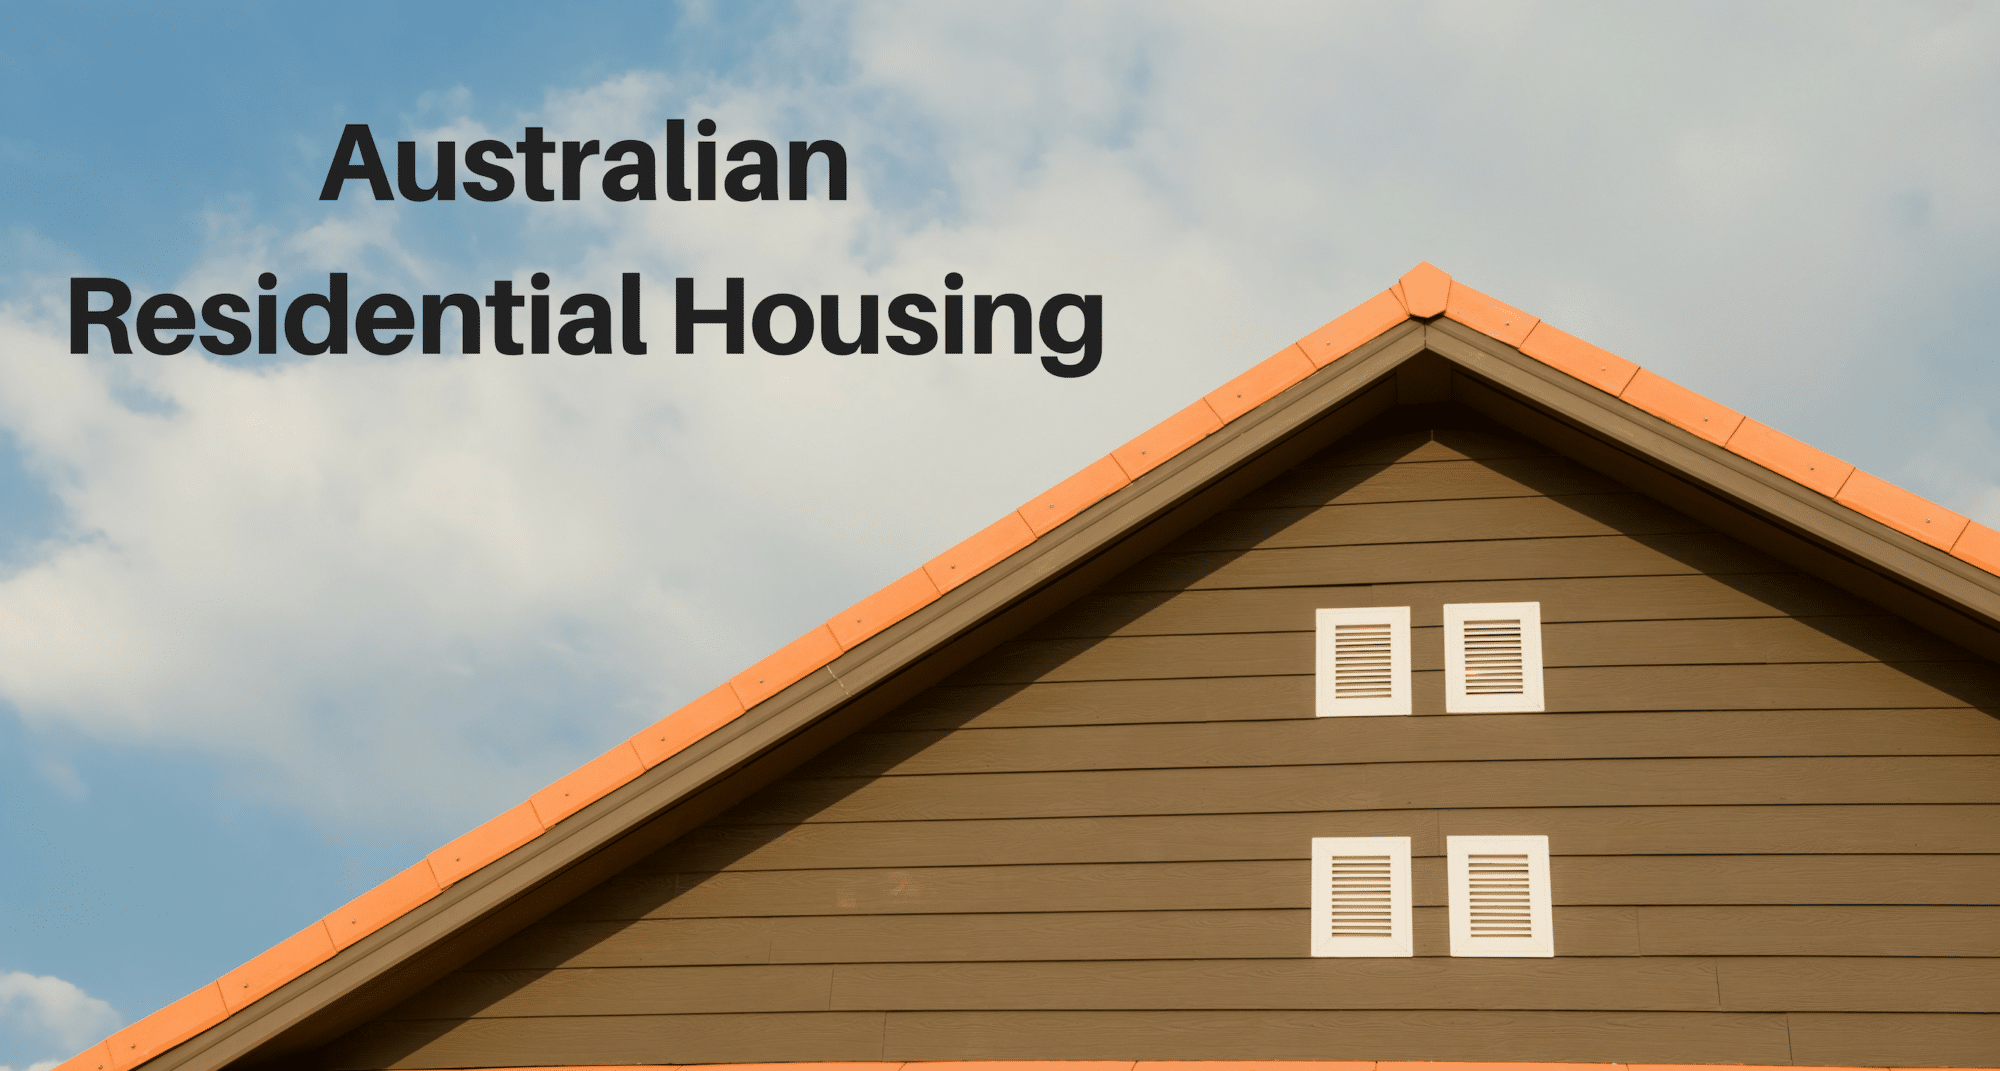 Australian Residential Housing